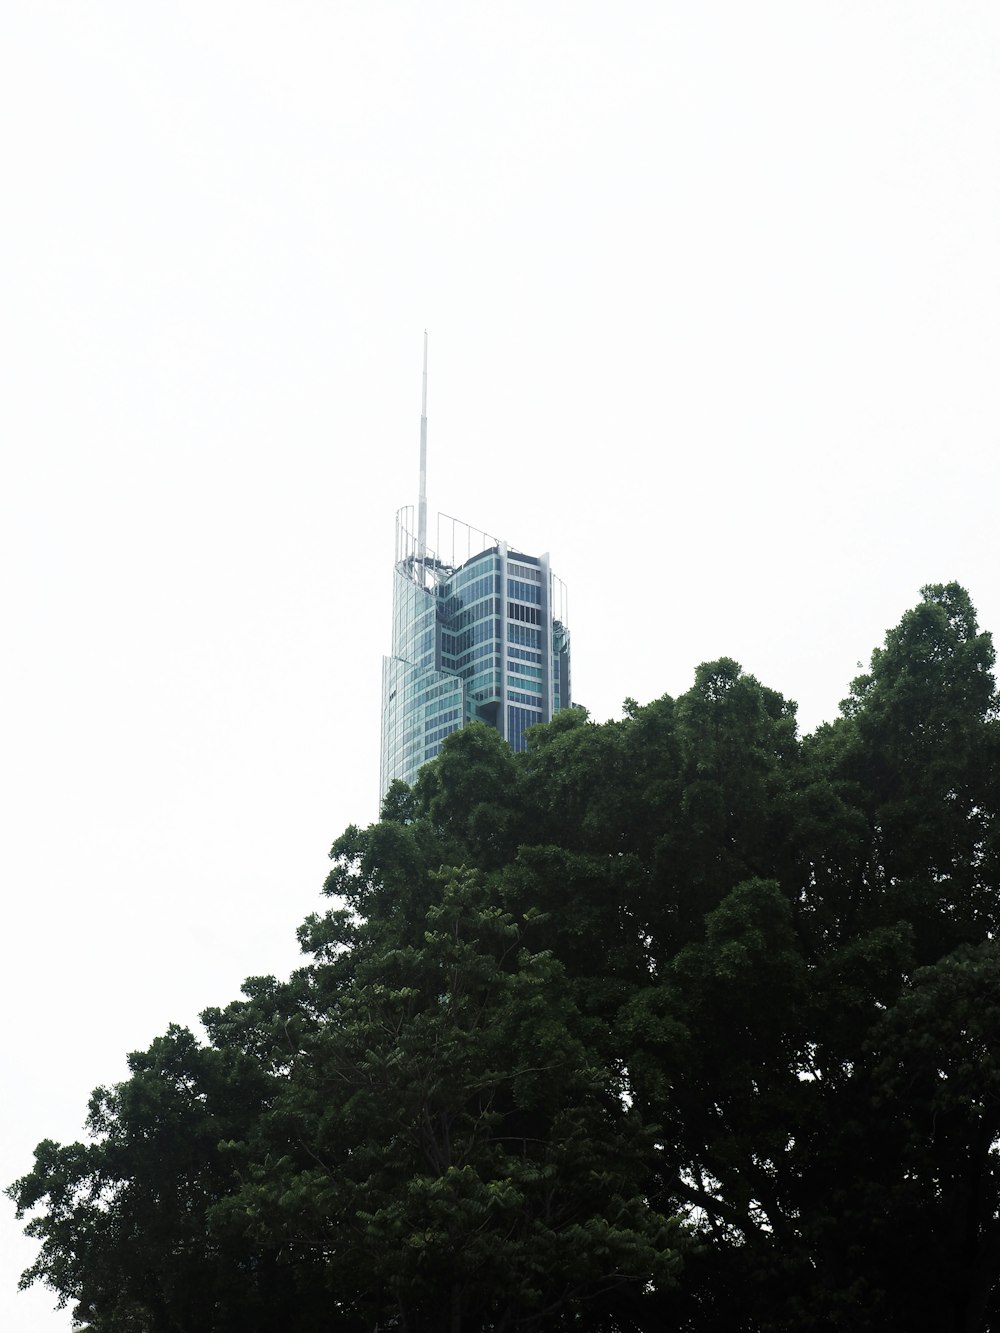 edifício alto com paredes de vidro azul perto de árvores